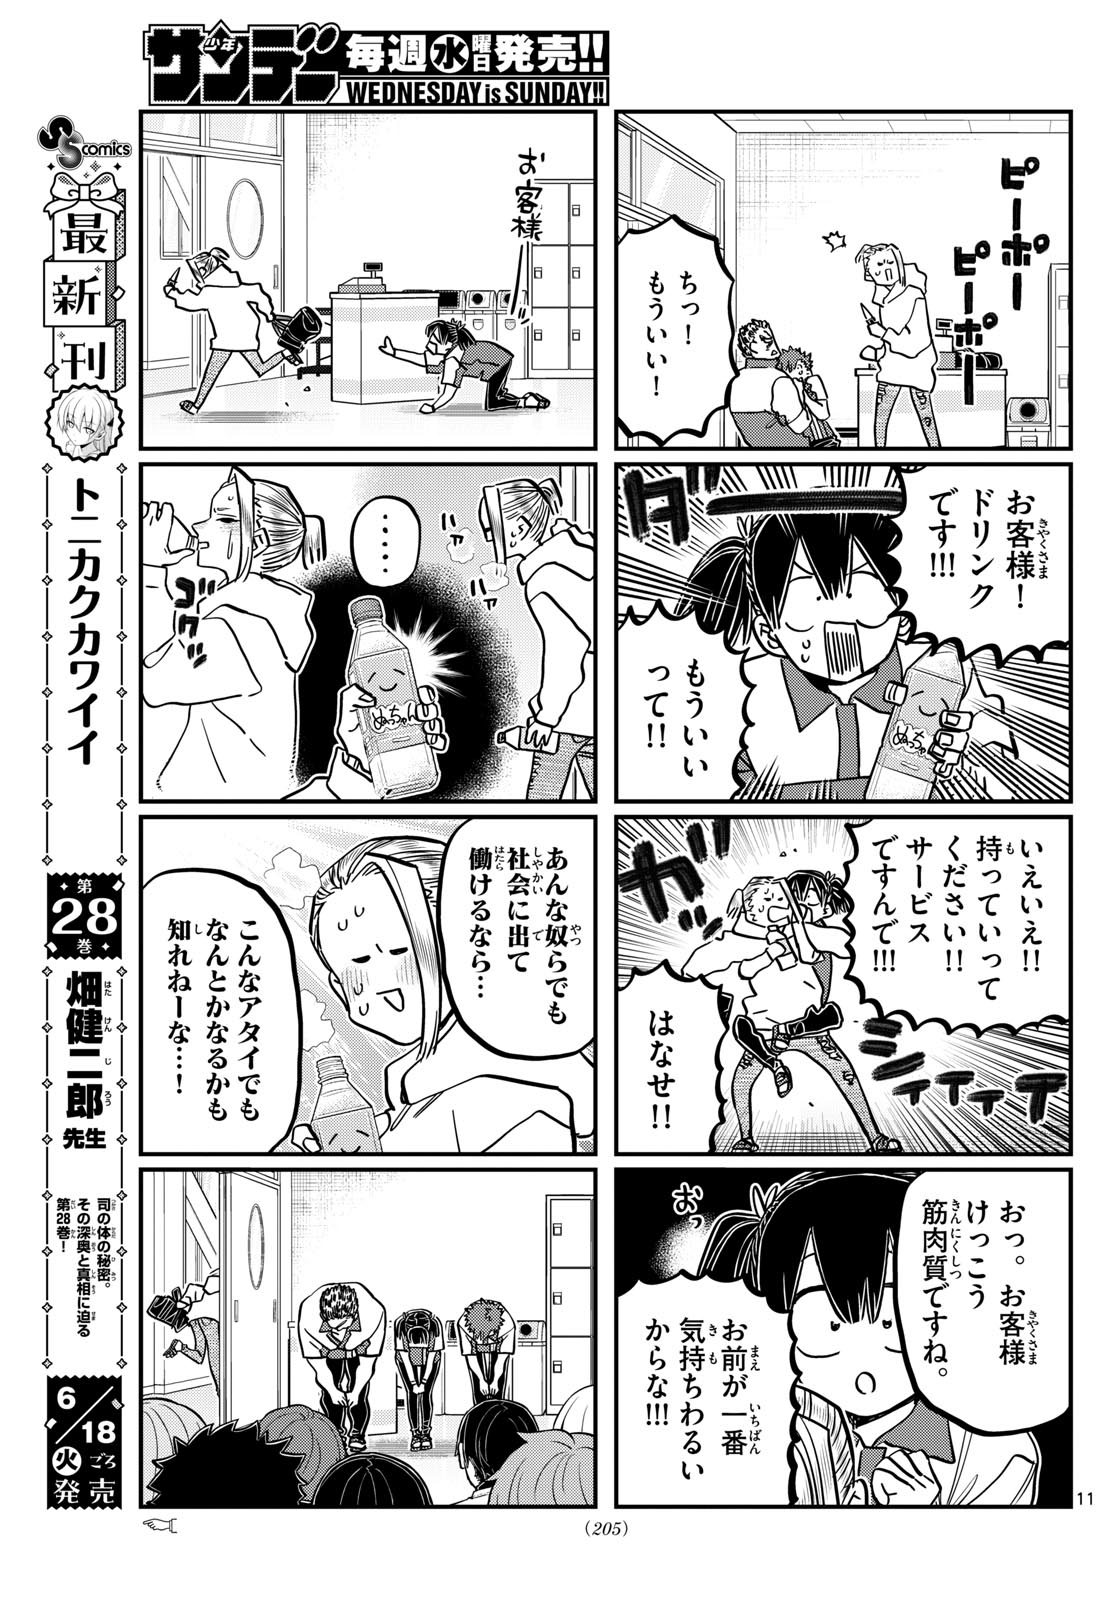 Komi-san wa Komyushou Desu - Chapter 460 - Page 11